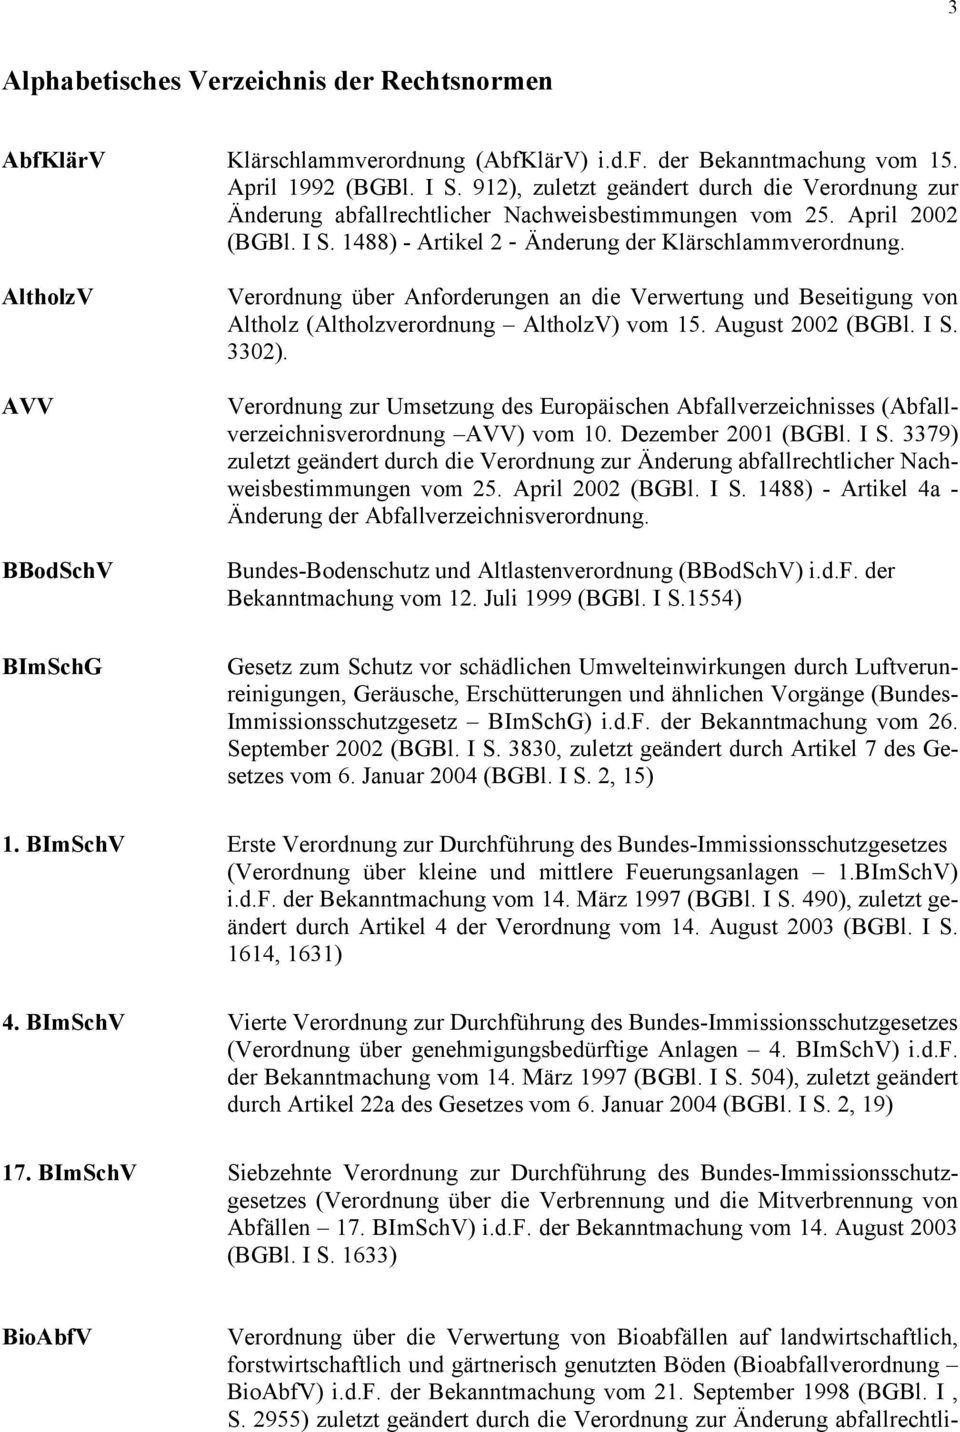 AltholzV AVV BBodSchV BImSchG Verordnung über Anforderungen an die Verwertung und Beseitigung von Altholz (Altholzverordnung AltholzV) vom 15. August 2002 (BGBl. I S. 3302).